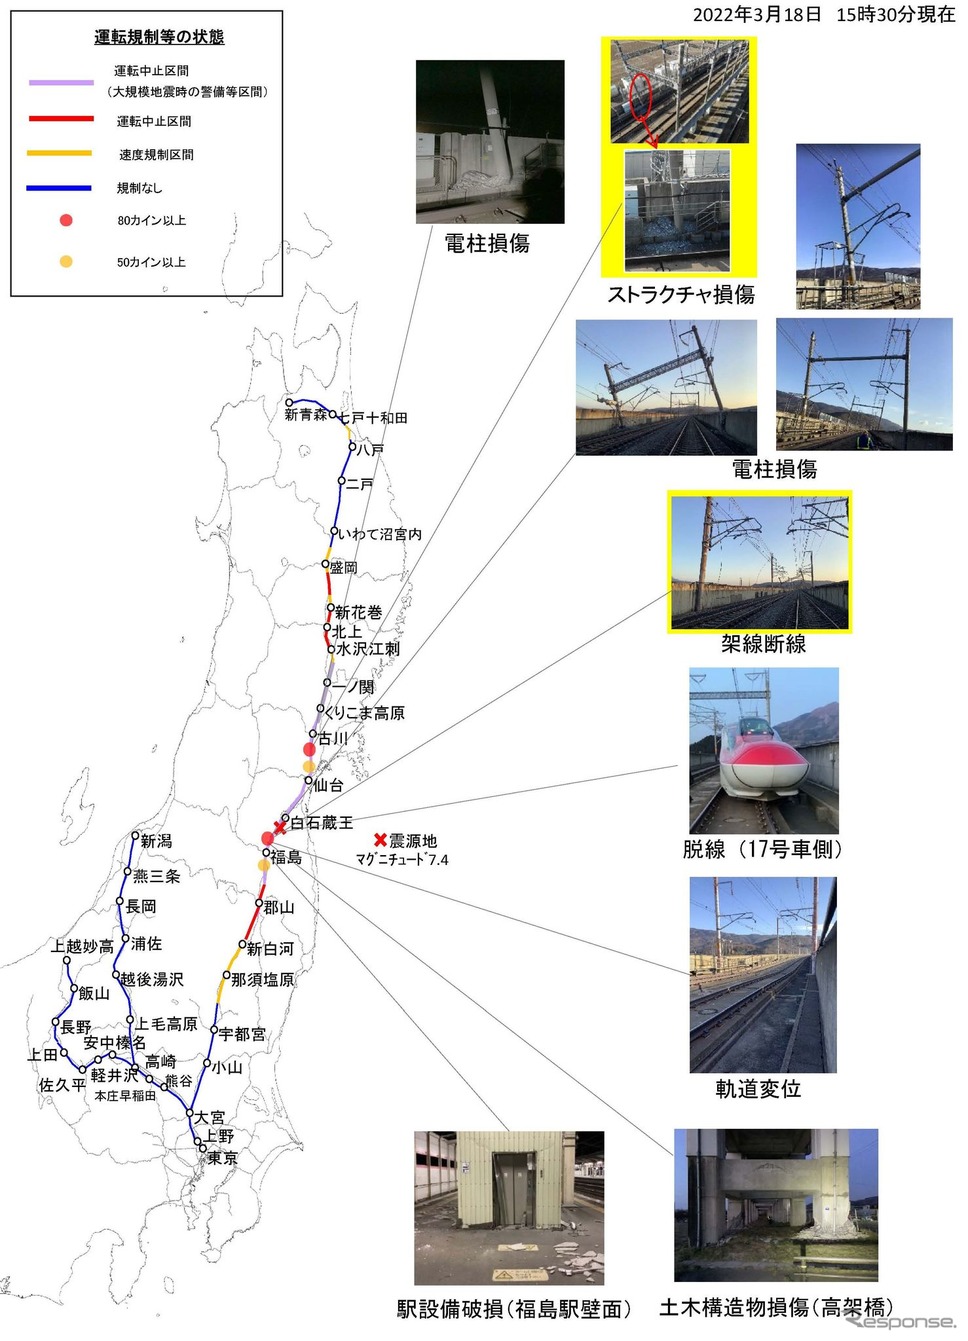 3月18日15時30分時点で確認されている被災状況。《資料提供 東日本旅客鉄道》